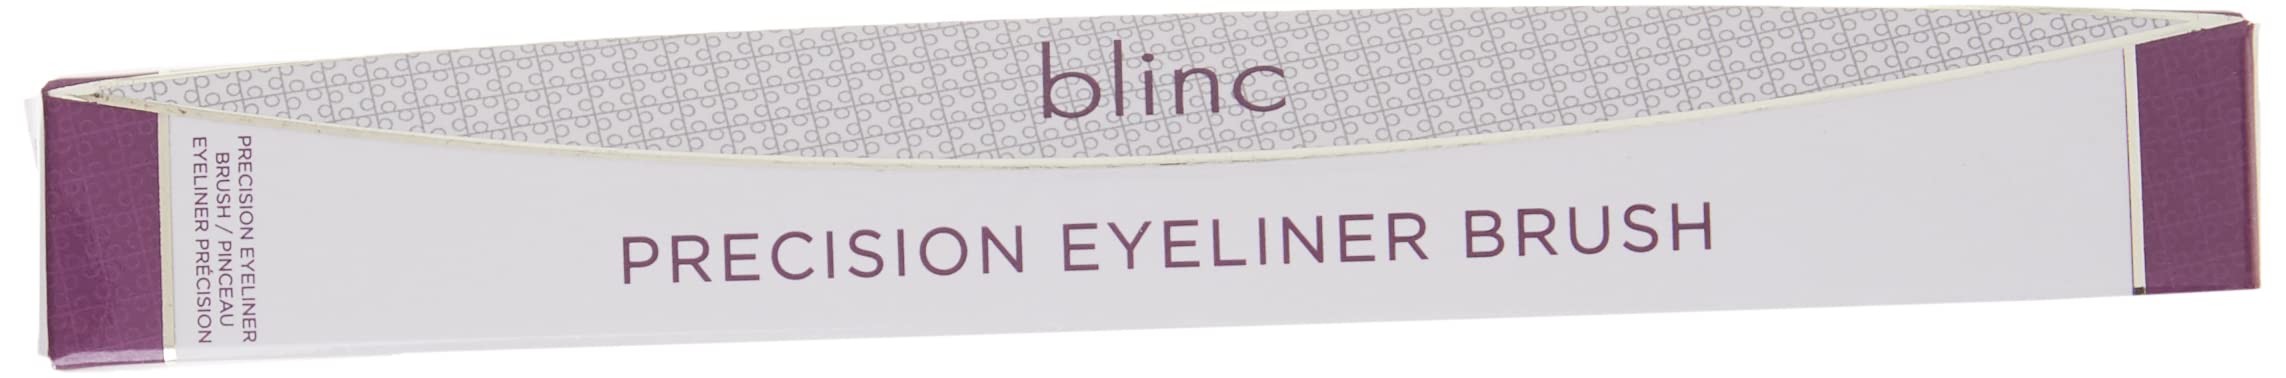 blinc Precision Eyeliner Brush